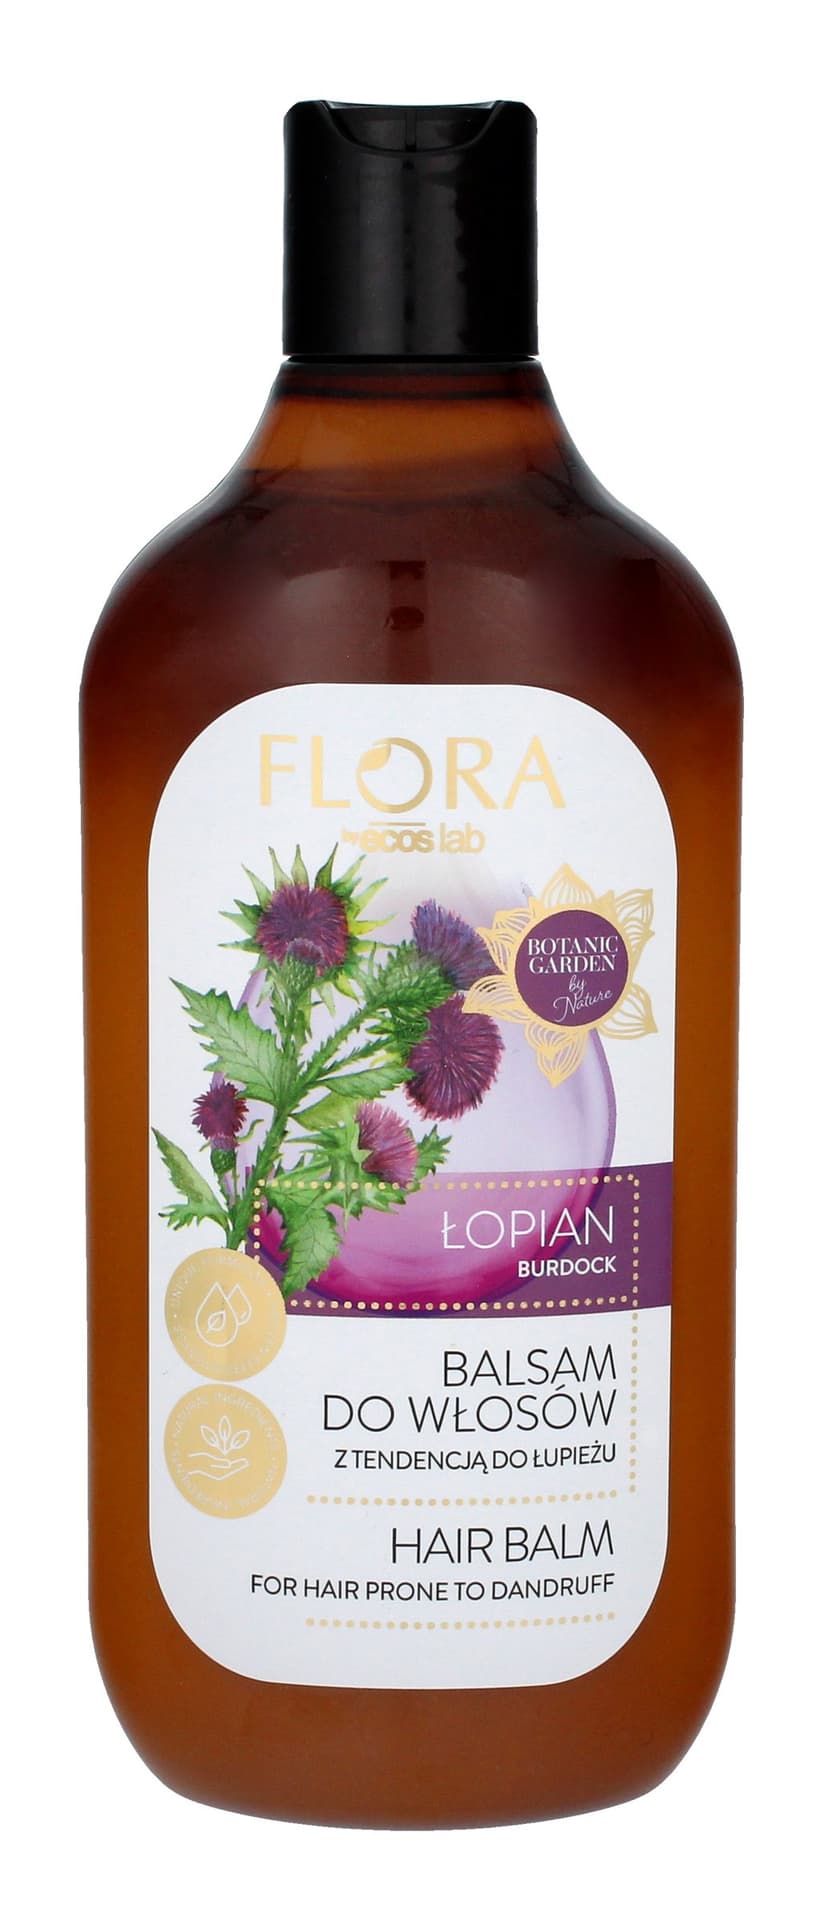 Zdjęcia - Szampon Ecos Lab Flora Balsam do włosów z tendencją do łupieżu - Łopian 500ml 